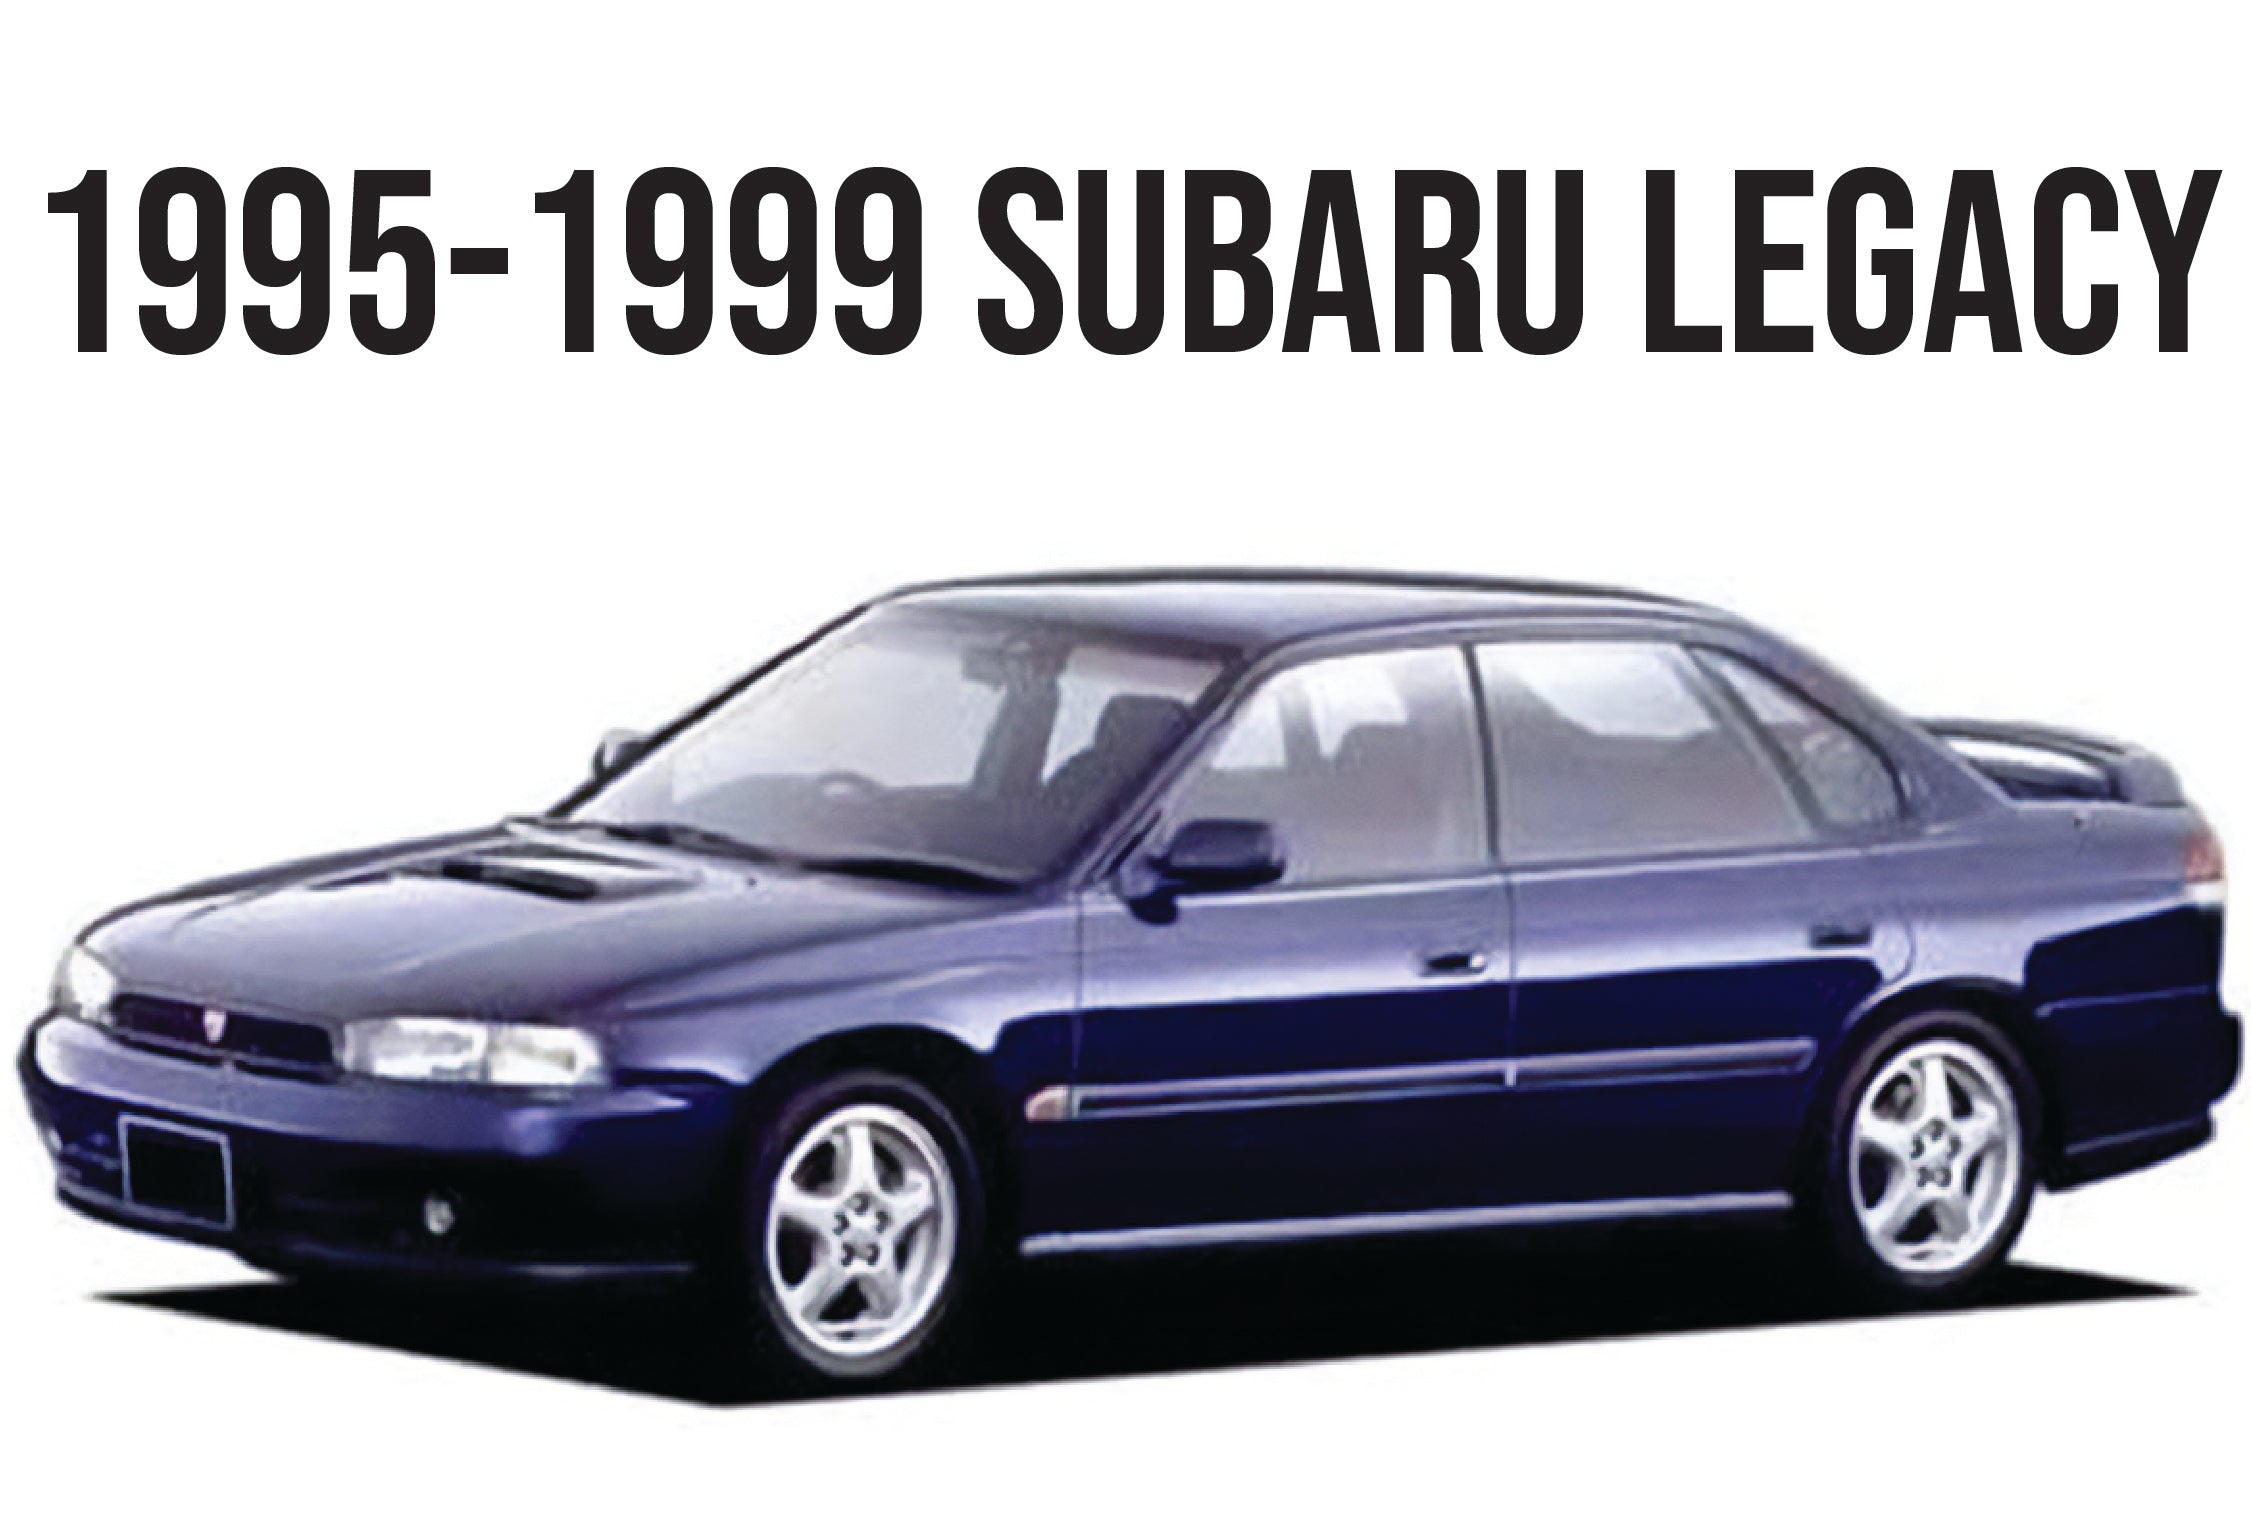 1995-1999 SUBARU LEGACY - Unique Style Racing